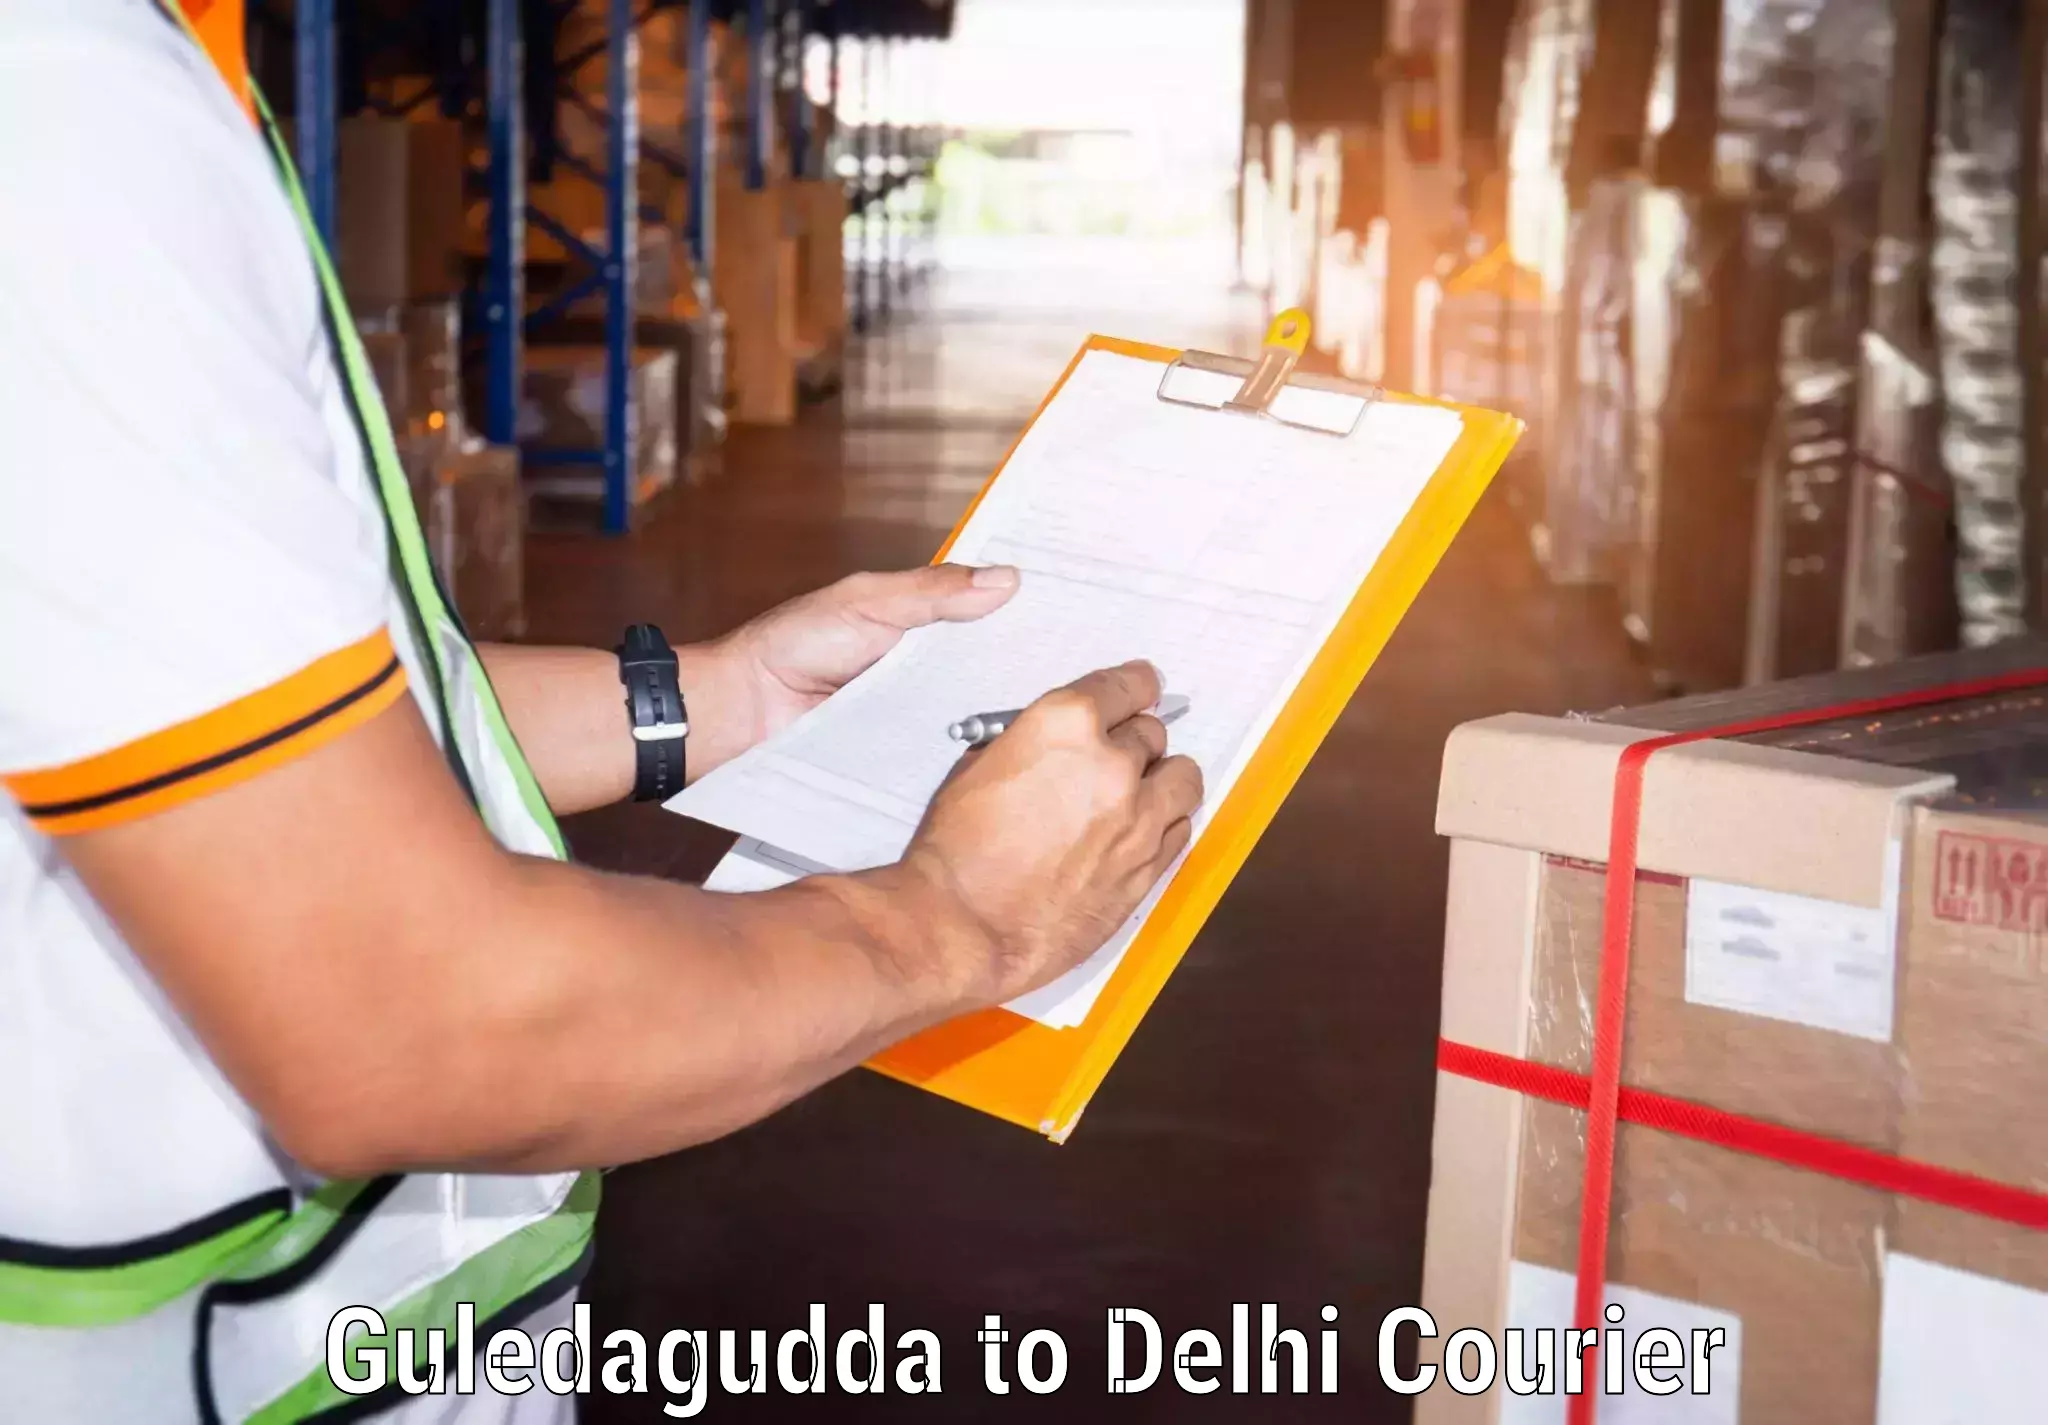 Courier service comparison Guledagudda to Jawaharlal Nehru University New Delhi